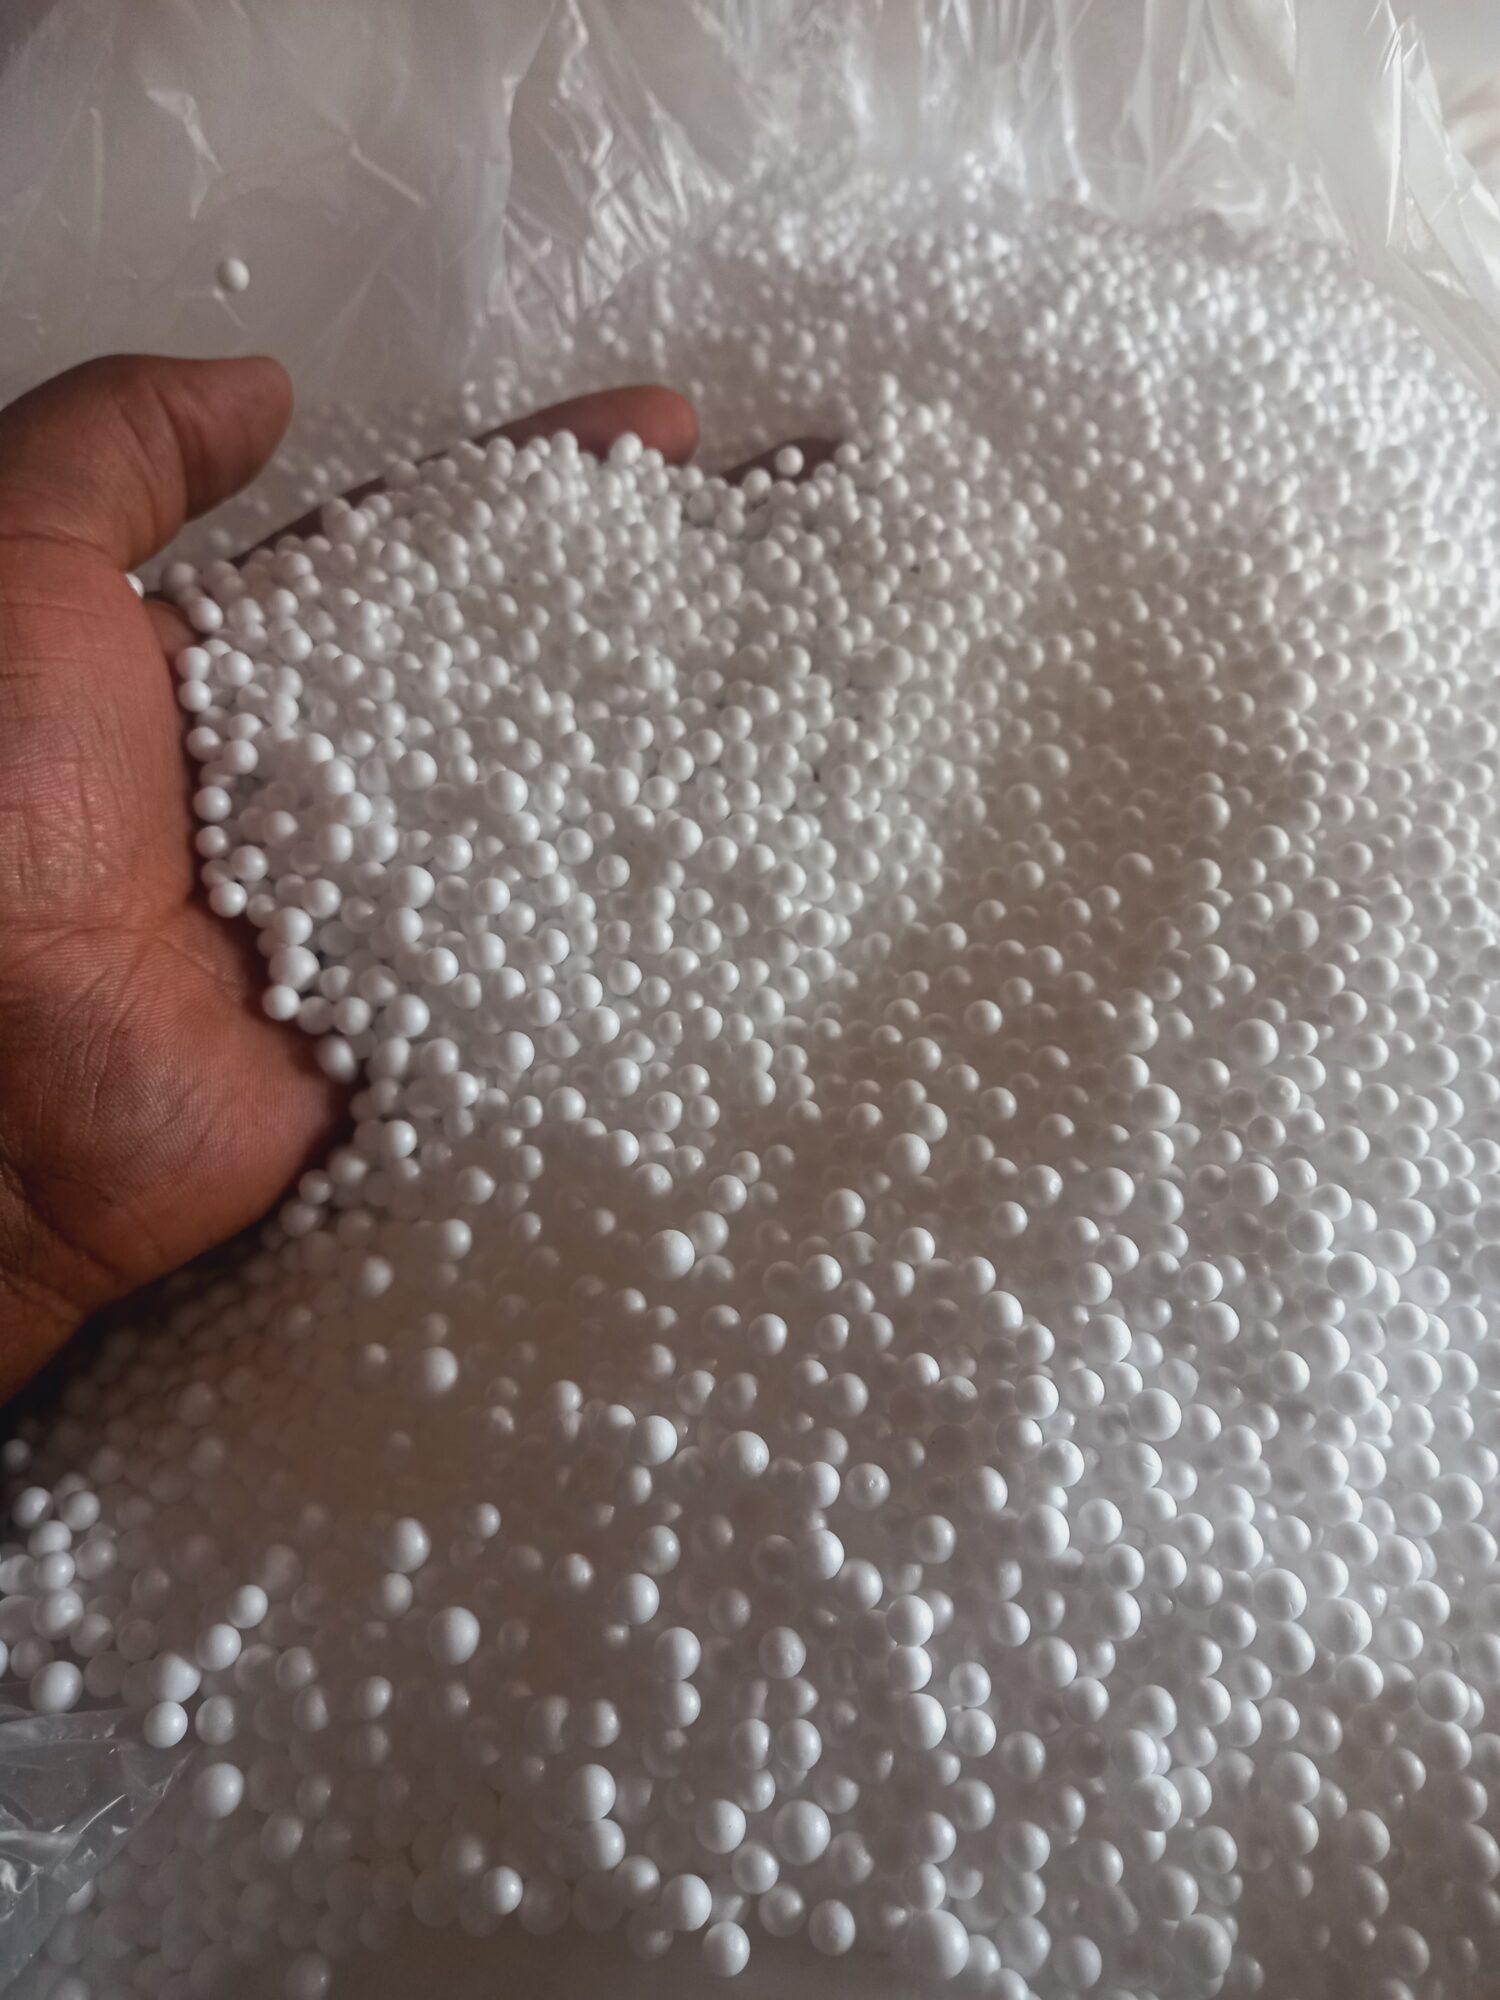 styrofoam-/polystyrene-beads-in-Kenya